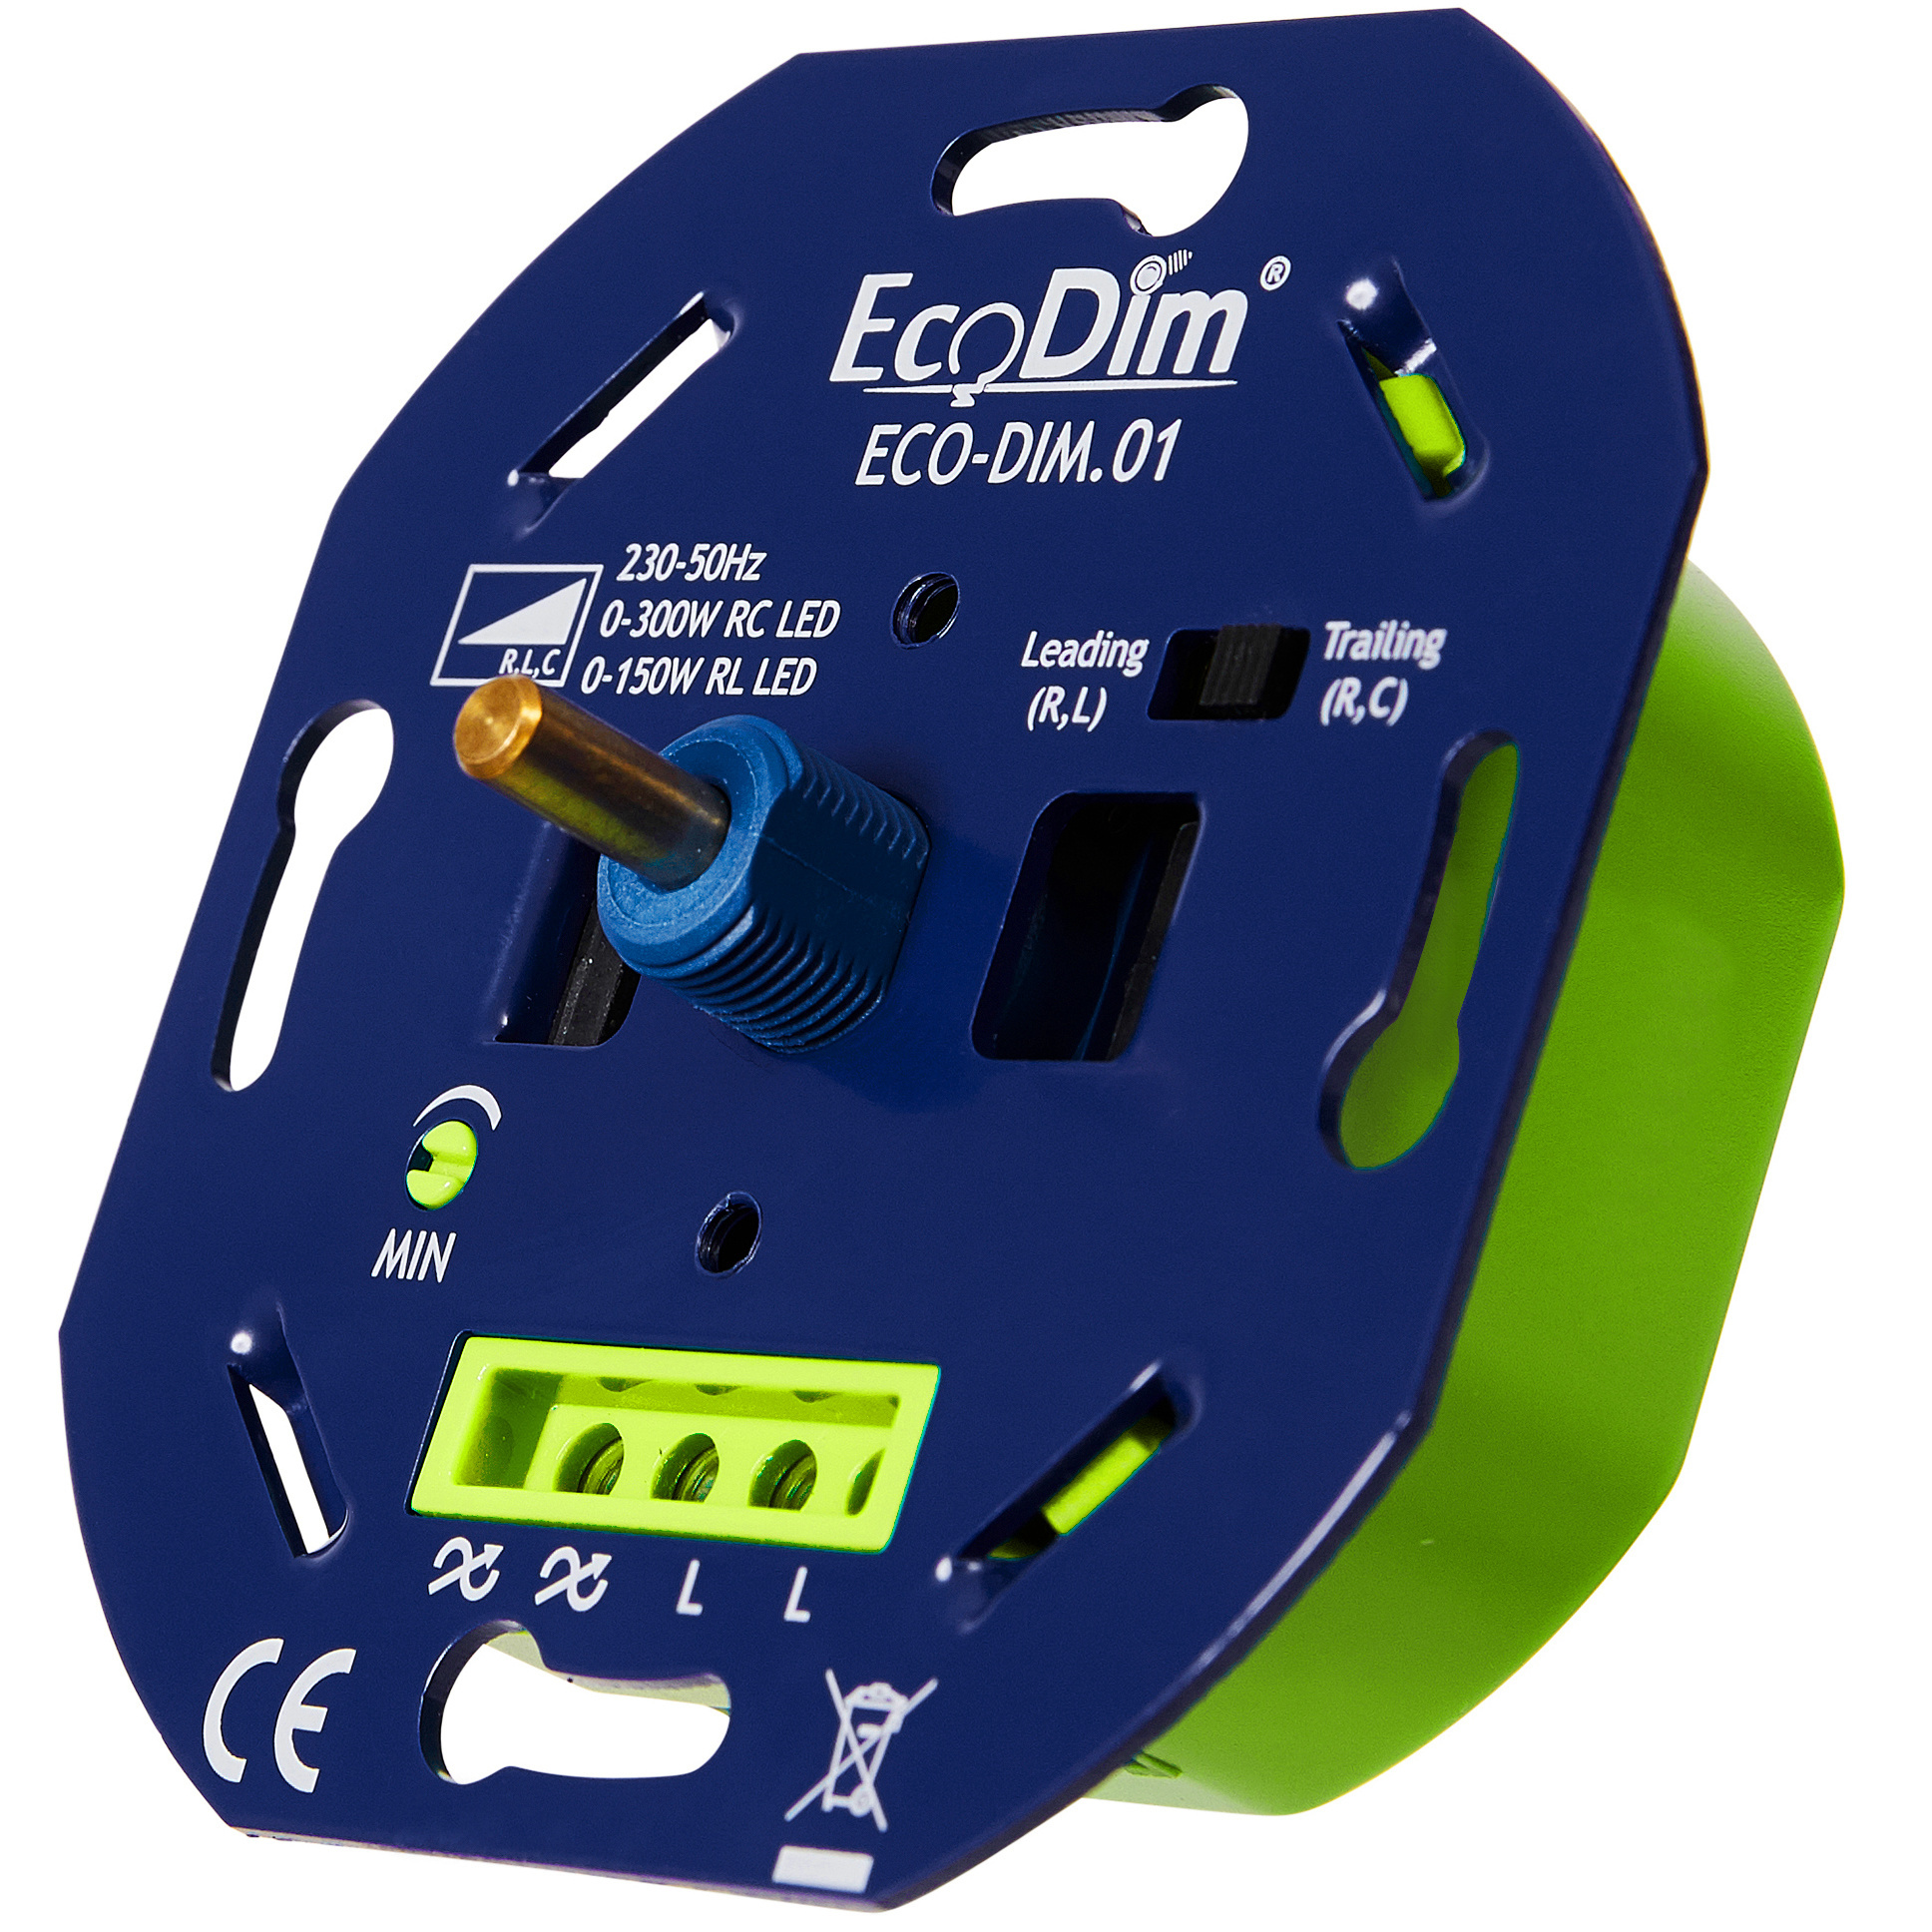 EcoDim ECO-DIM.01 Led dimmer universeel 0-300W (RLC) fase aan- en af snijding.